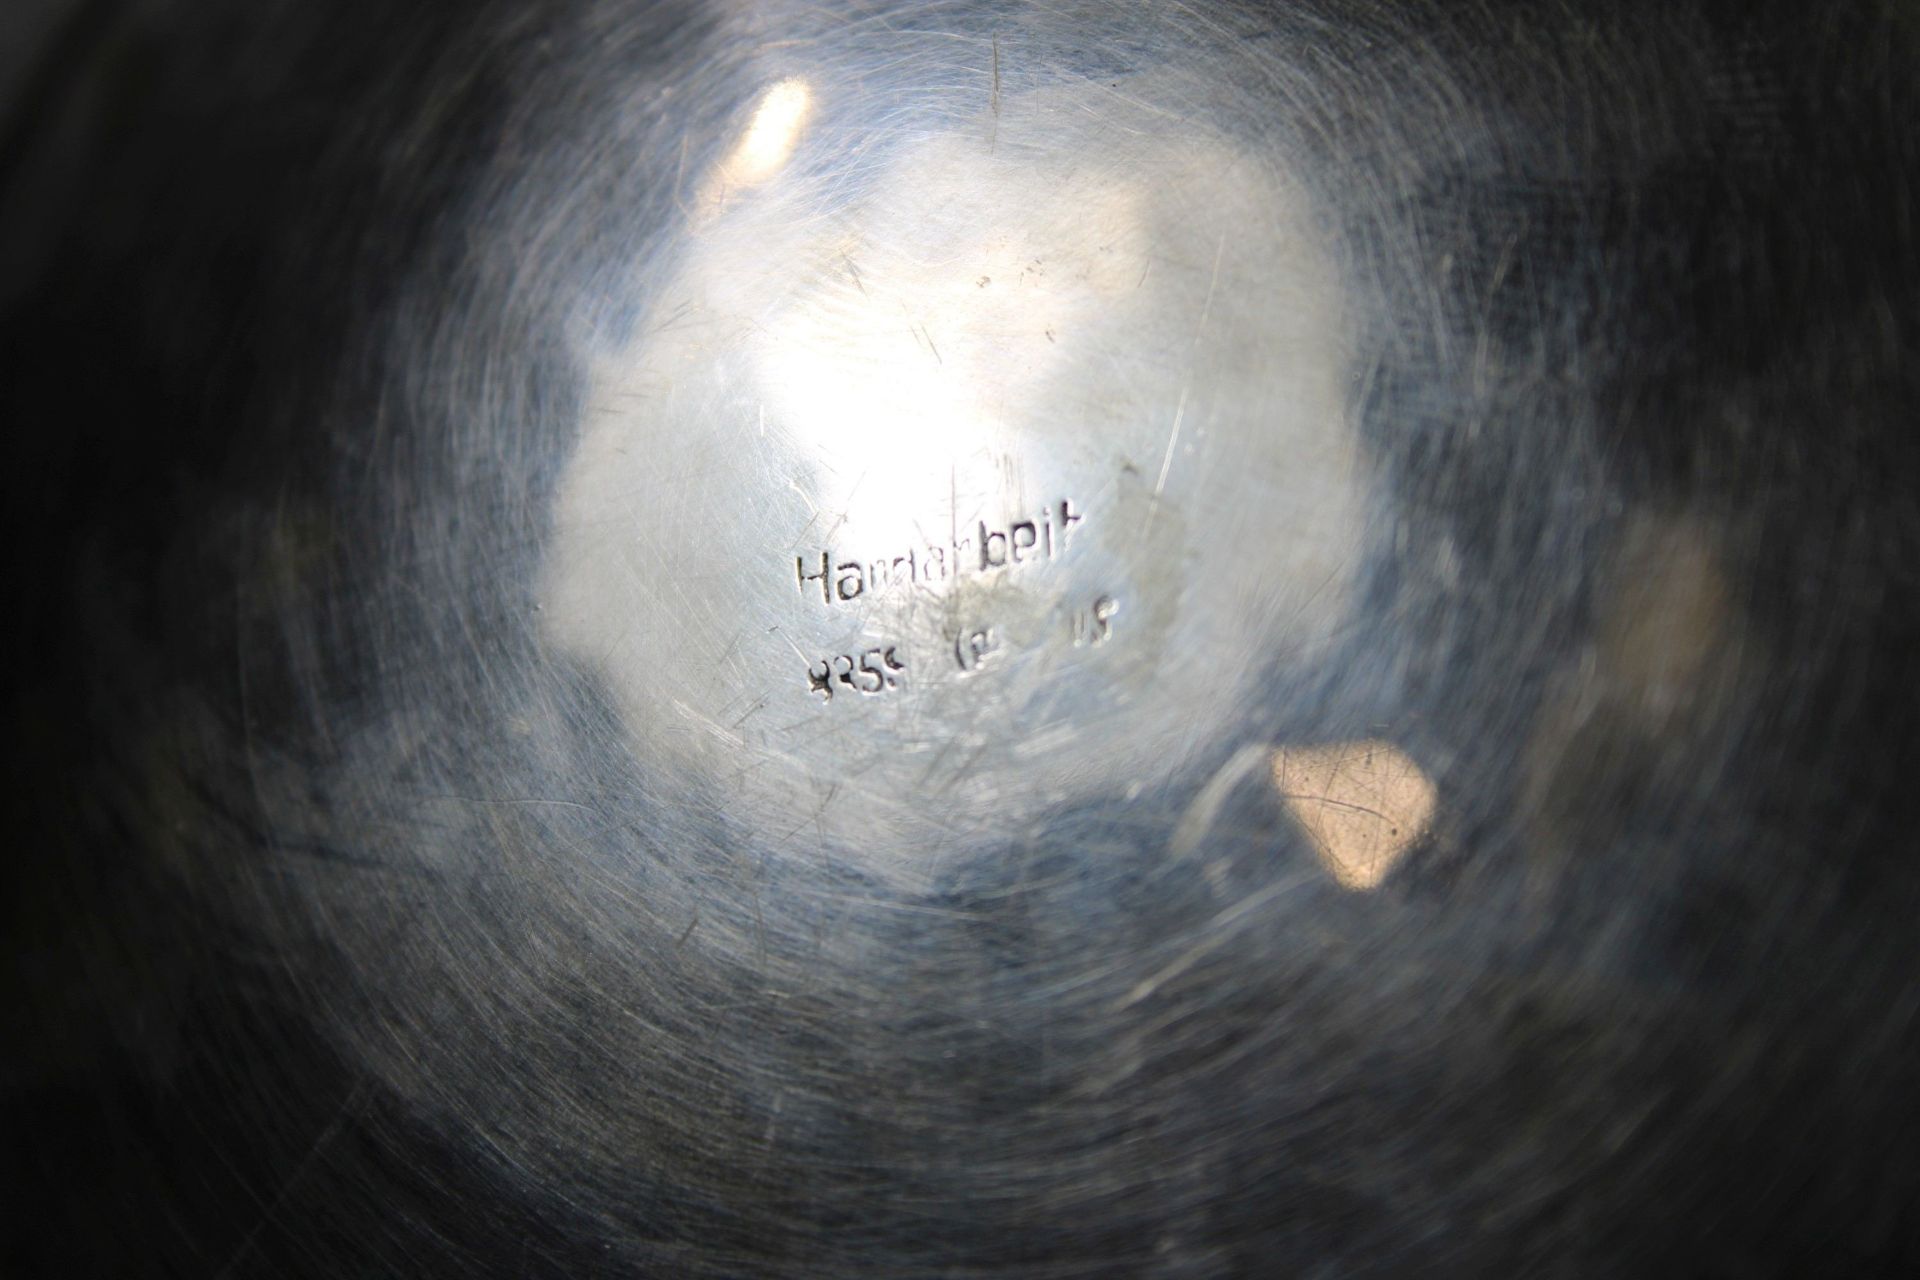 Tripod Schale, 835er Silber, Dm.: 17 cm, Gewicht: 126 g. Guter, altersbedingter Zustand. - Image 2 of 2